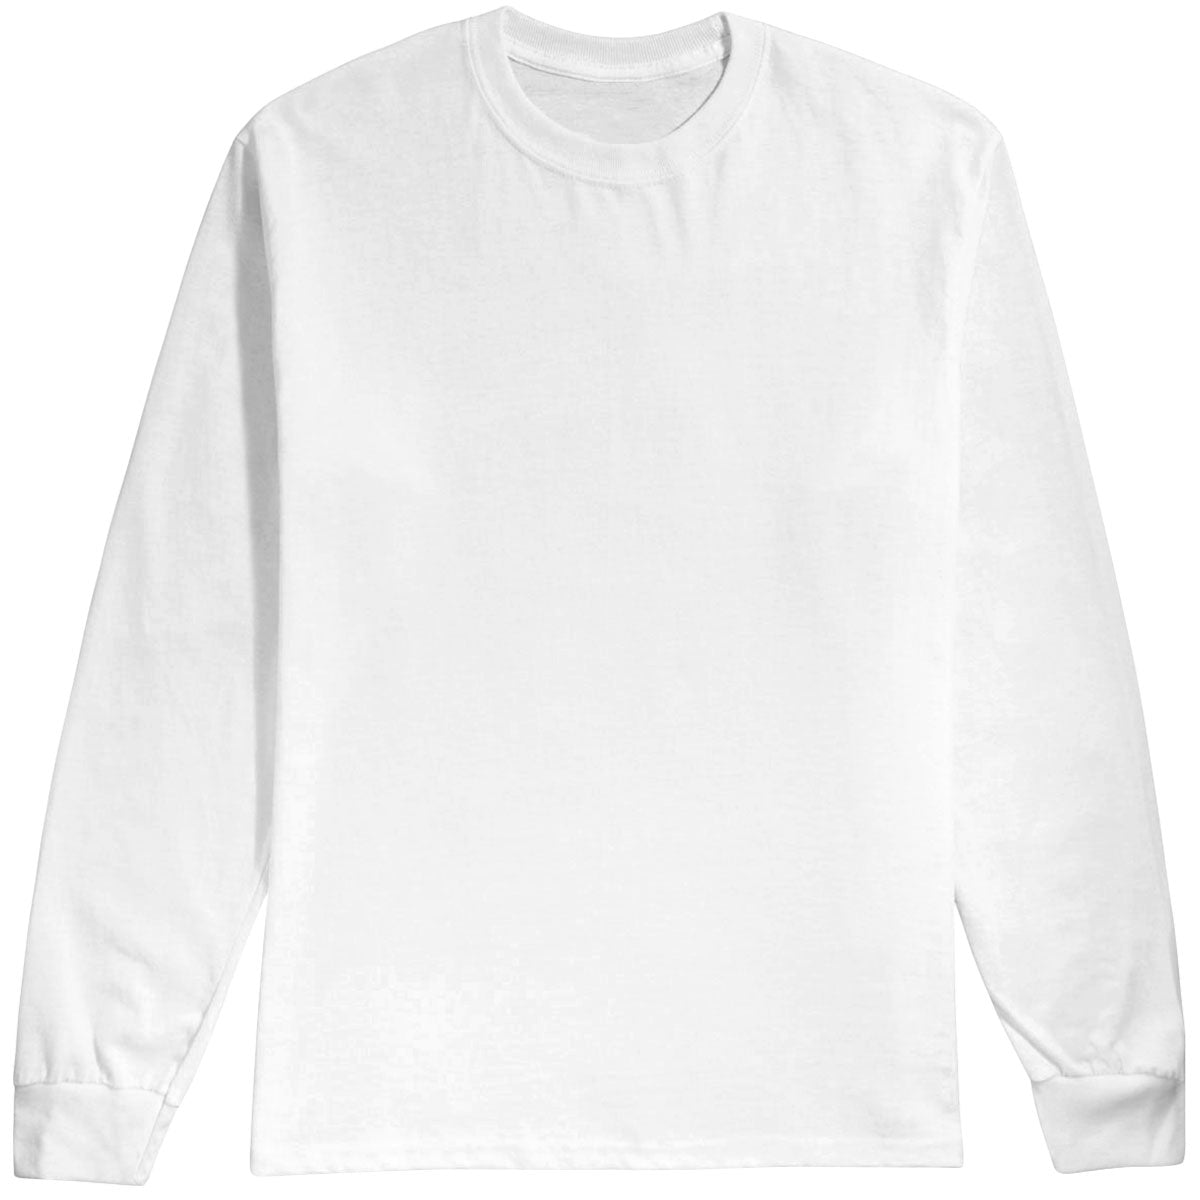 Habitat Crest Long Sleeve T-Shirt - White - SM image 1